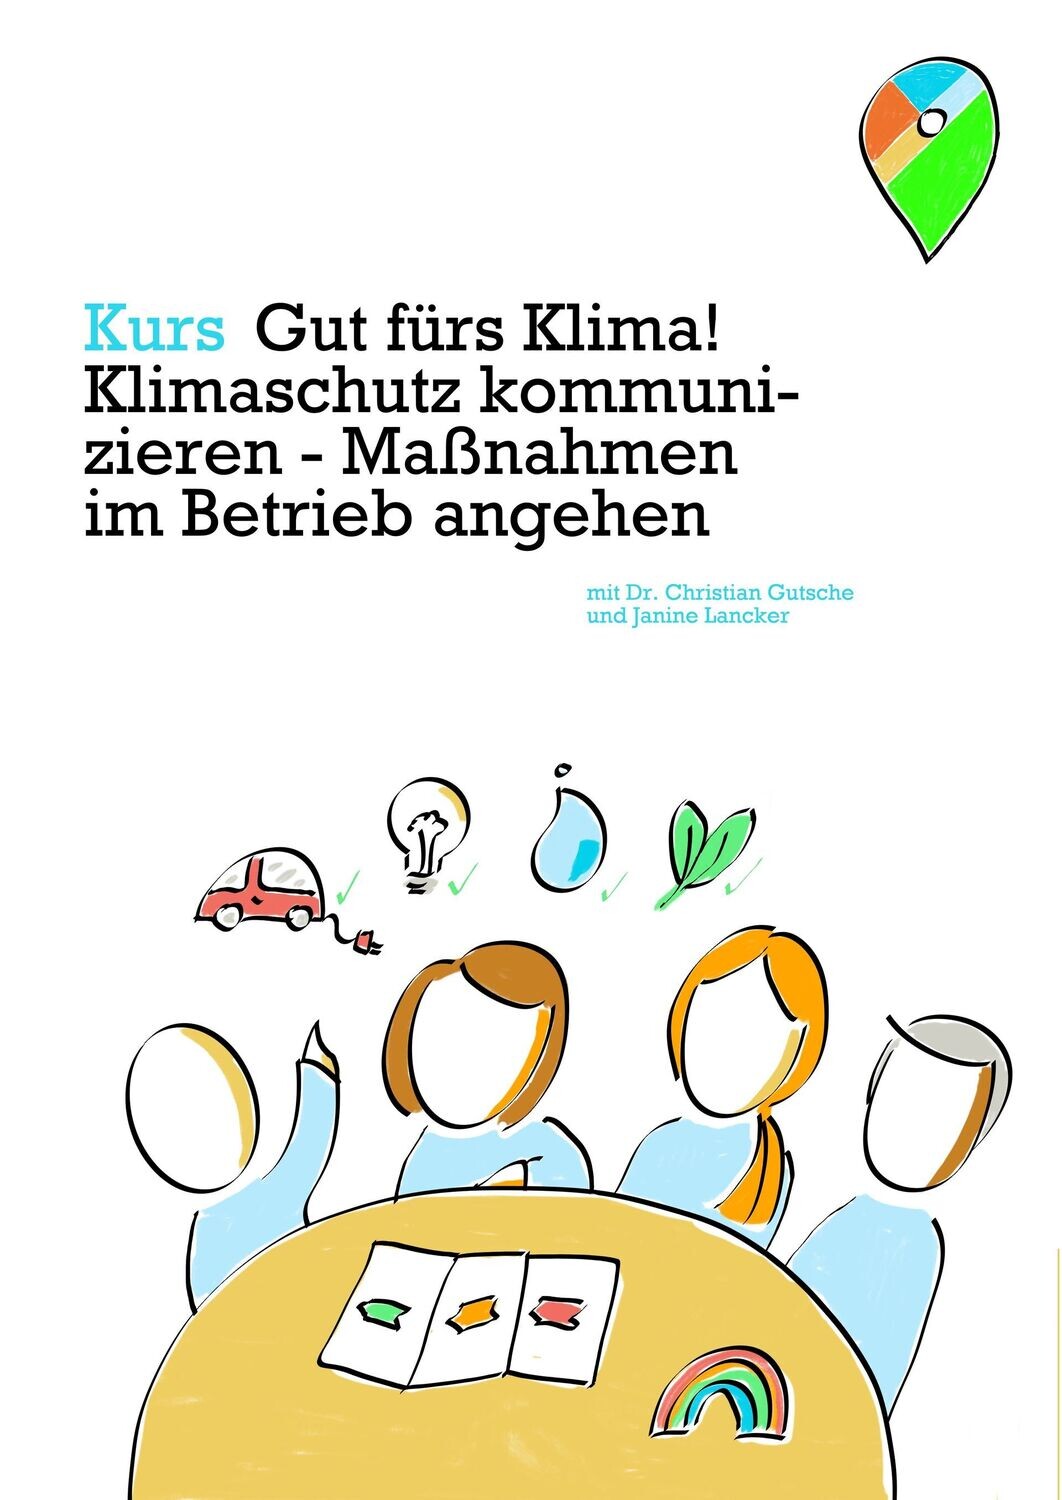 Kurs Christian Gutsche Klimaschutz im Betrieb in Bremen teilnehmen